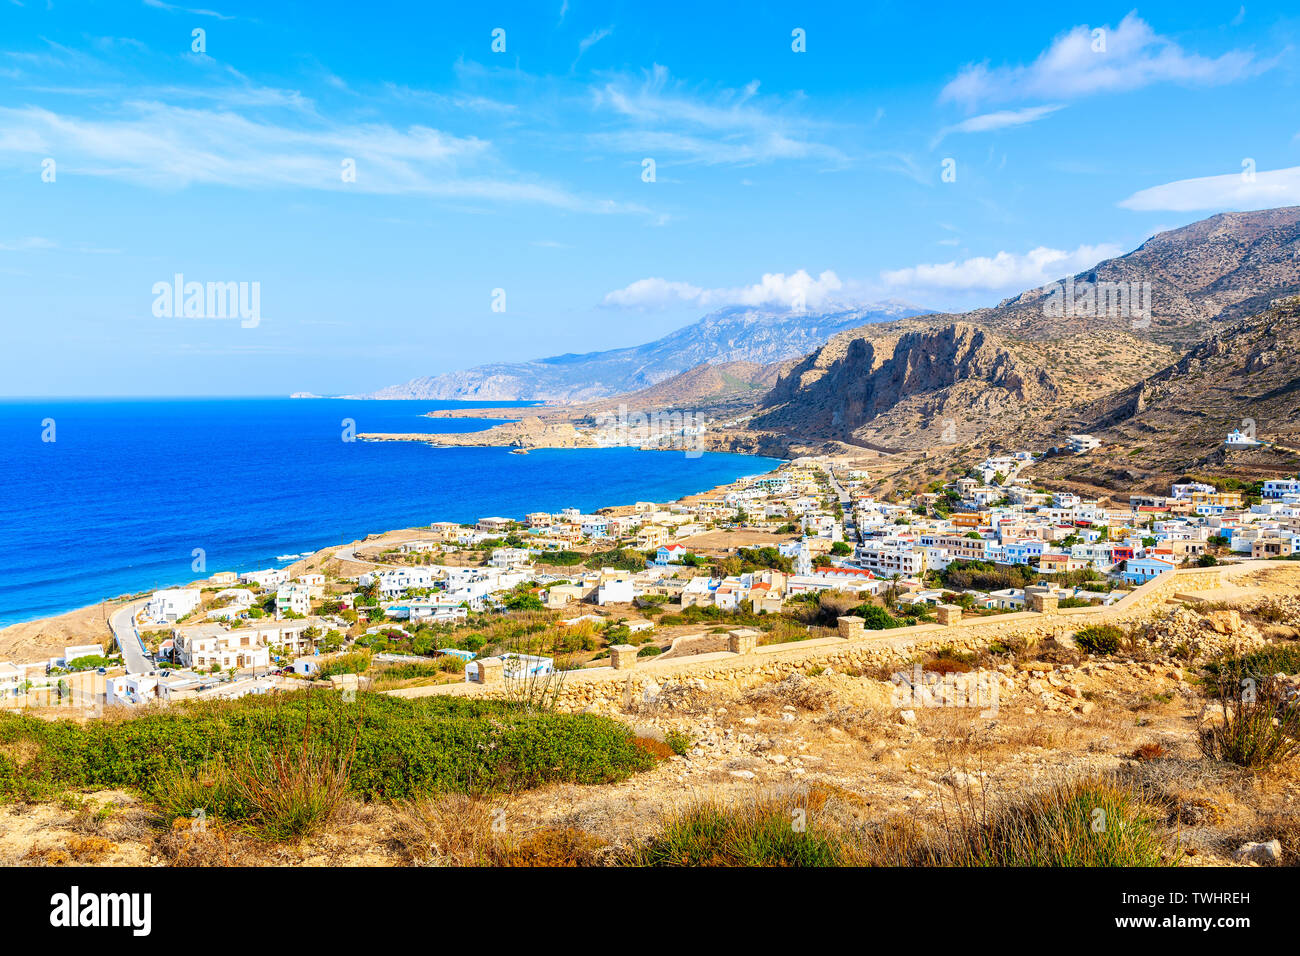 Vue de la côte de la mer magnifique avec des montagnes et village Arkasa sur l'île de Karpathos, Grèce Banque D'Images